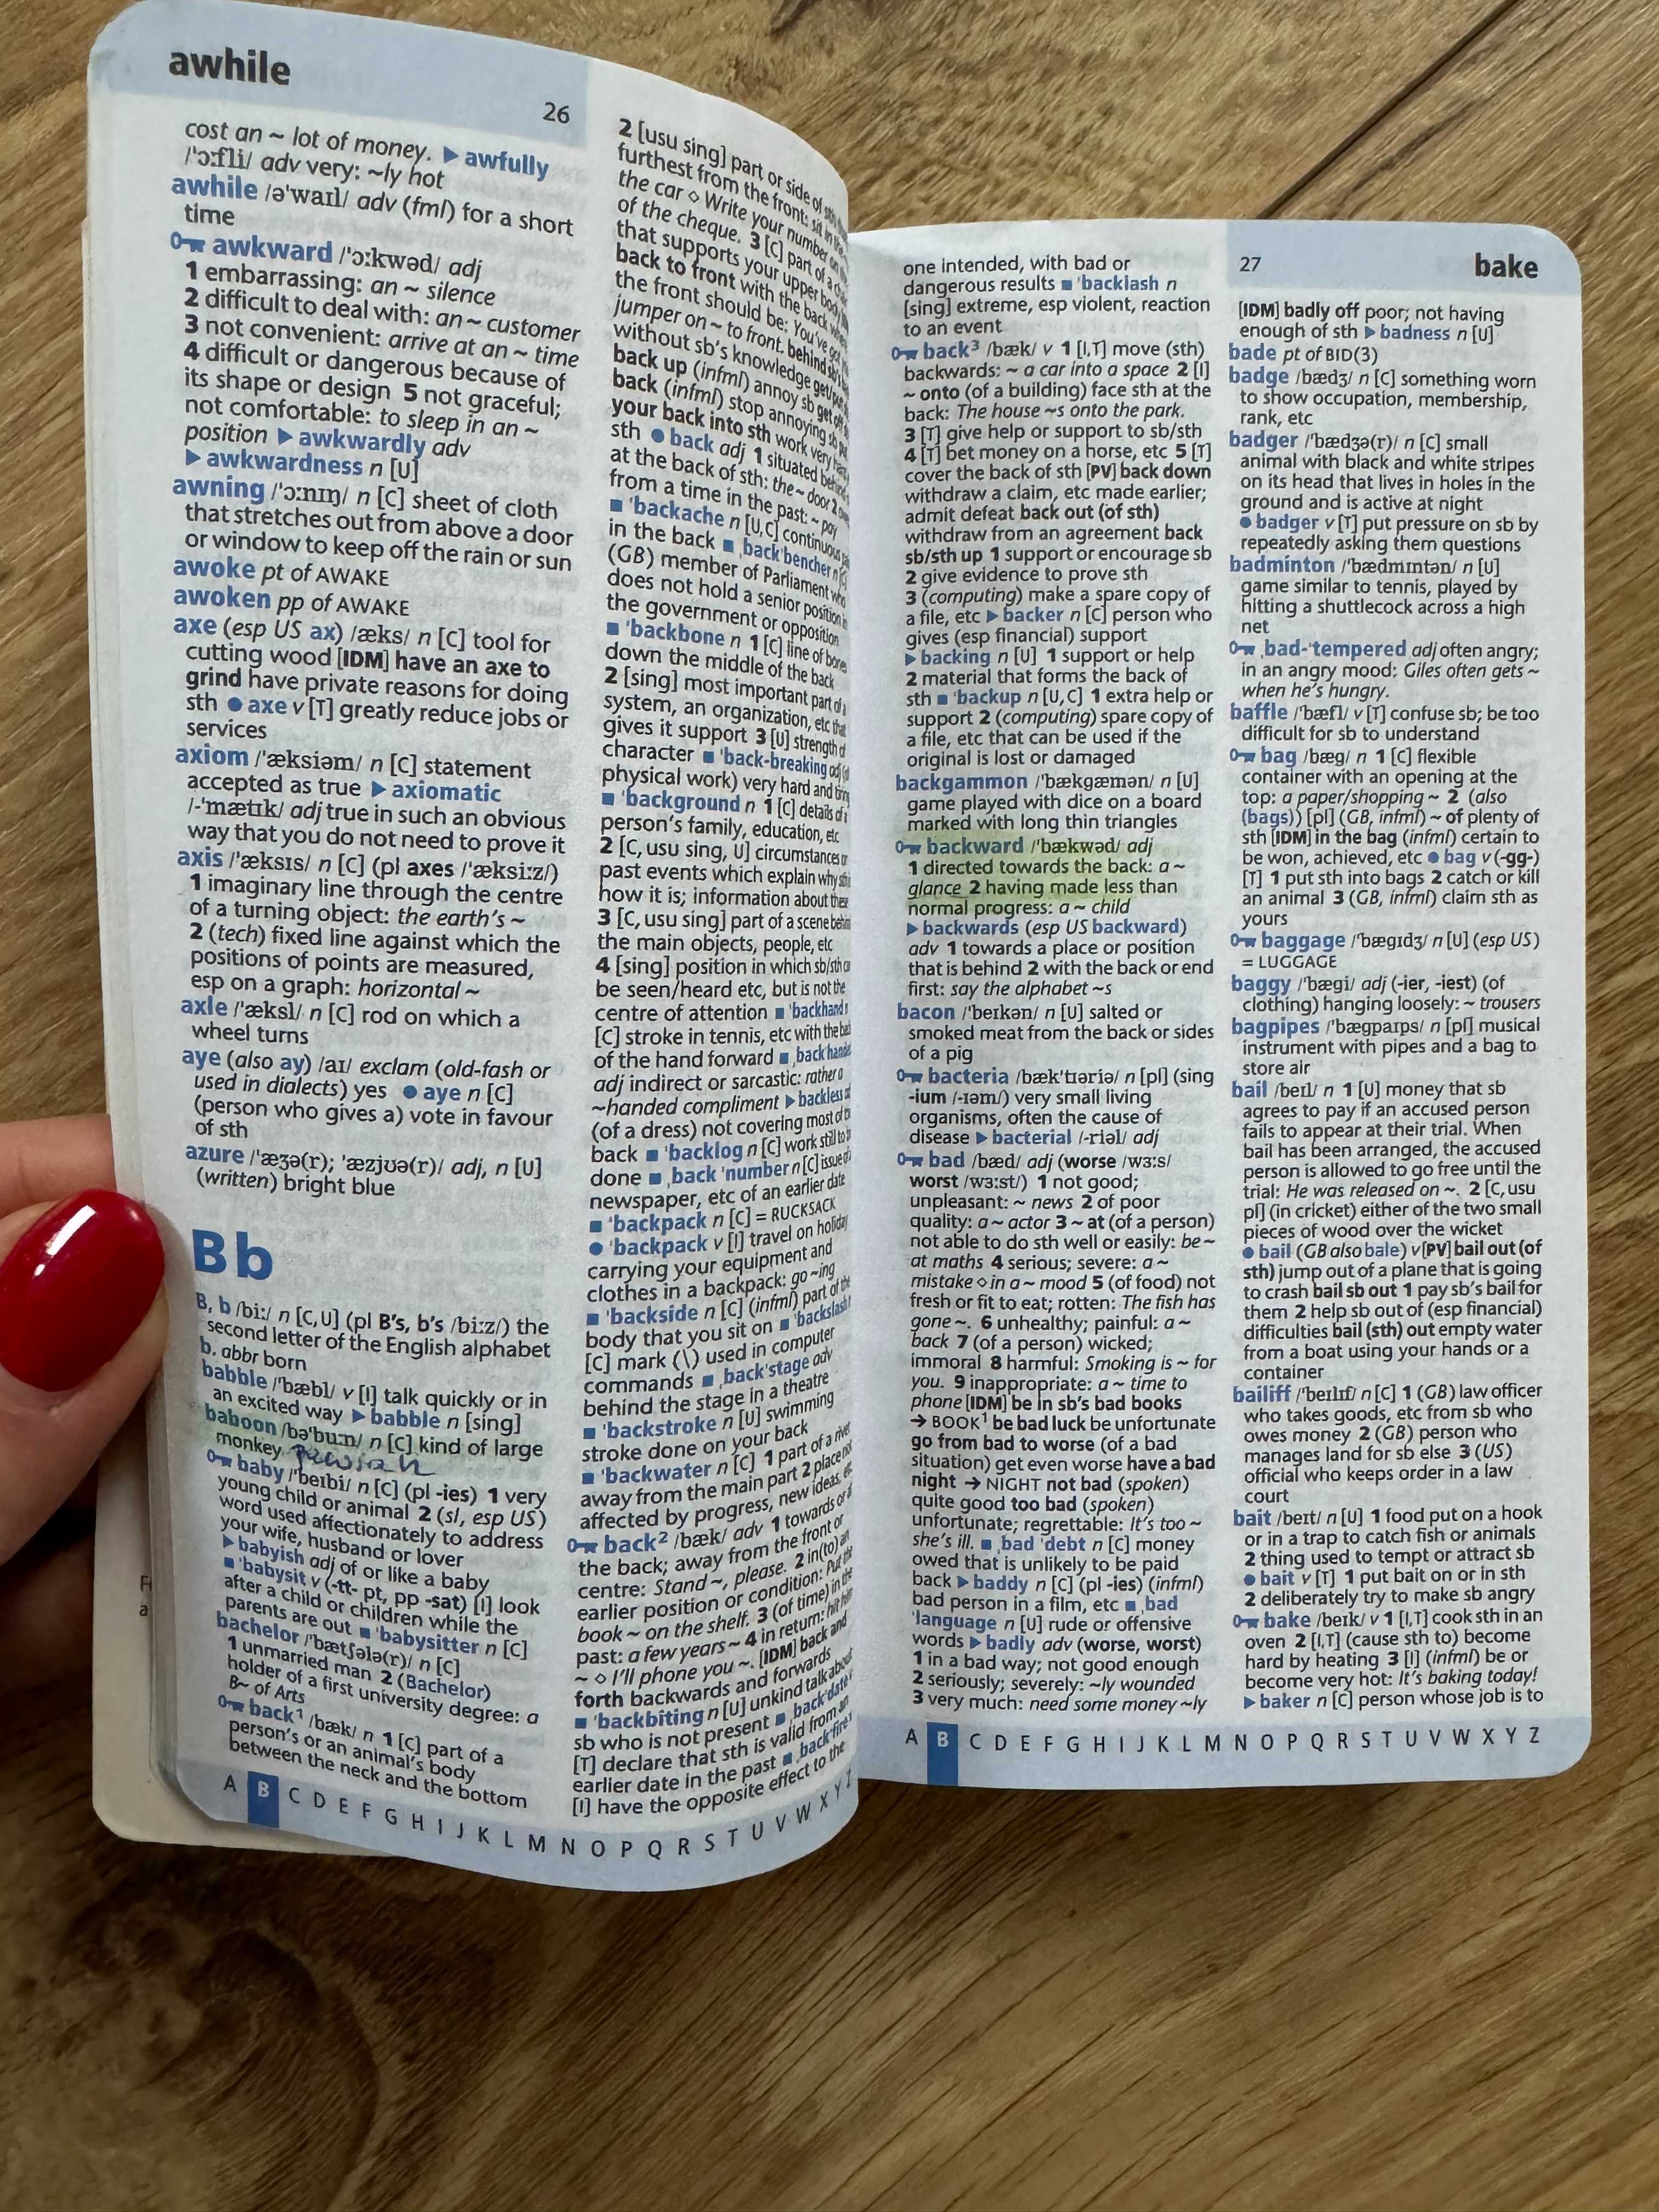 Podręczny Słownik oxford learner's pocket. Polecam